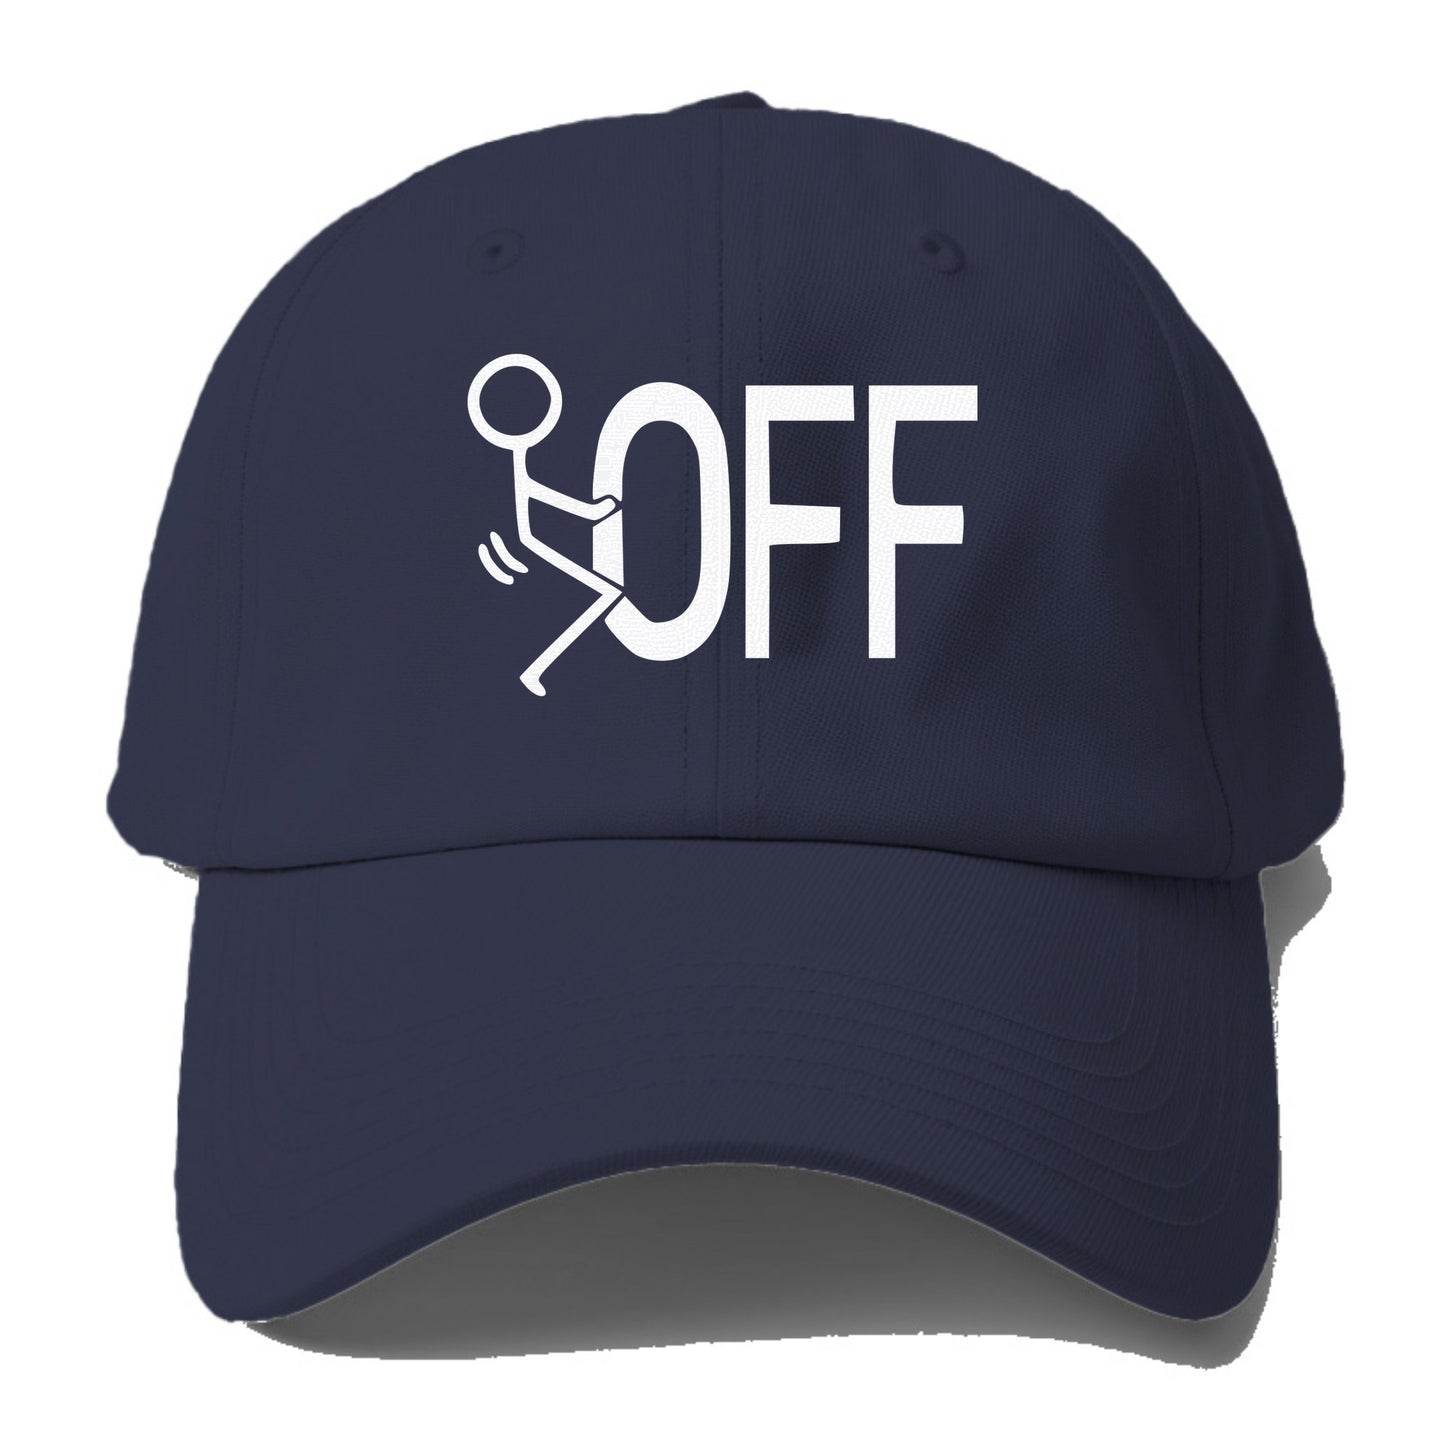 f off Hat